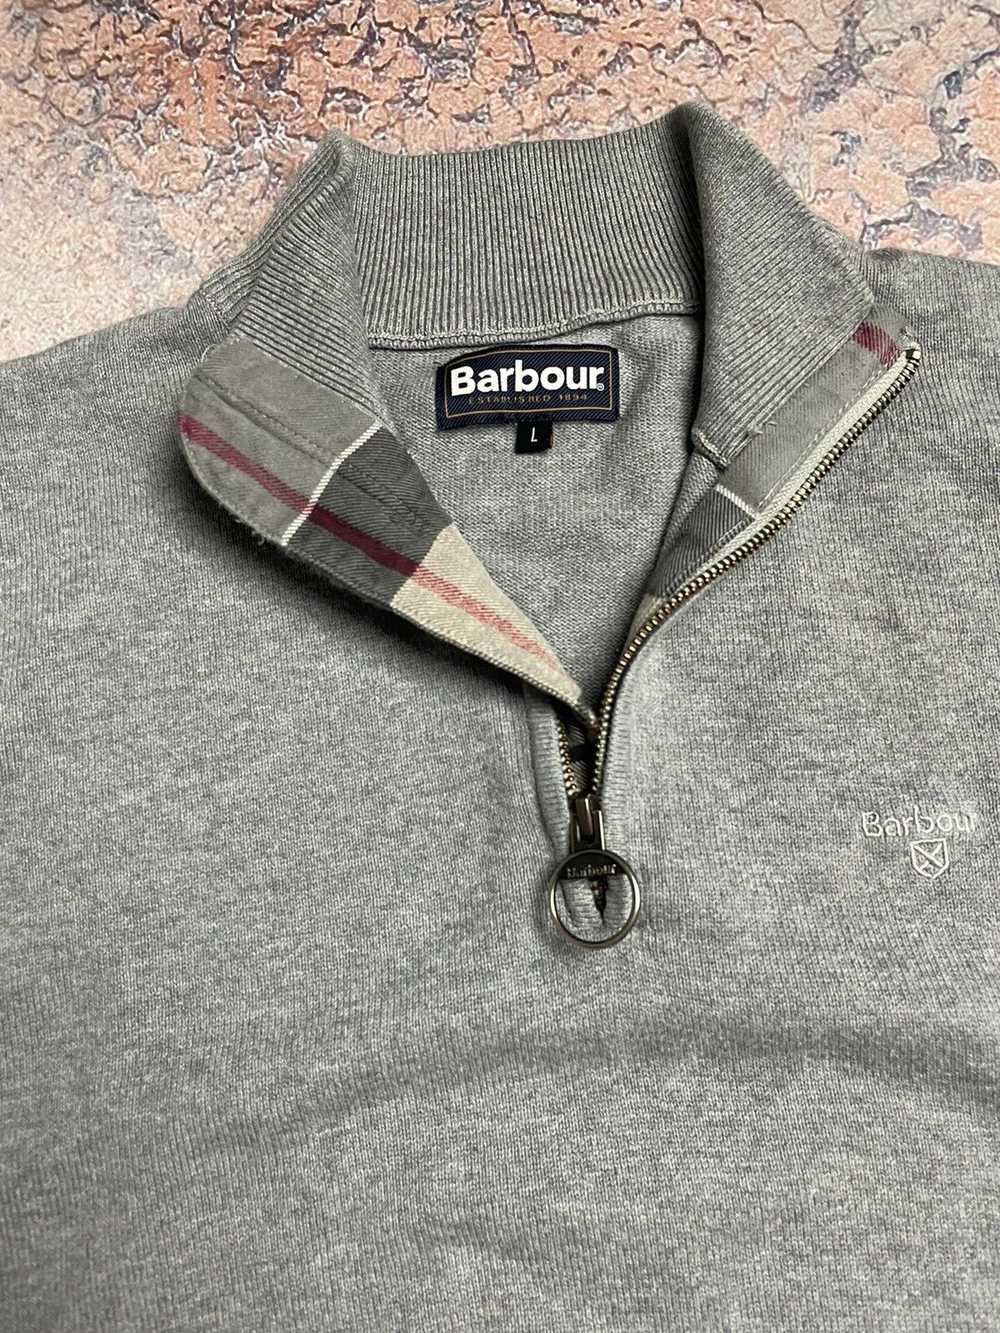 Barbour × Luxury × Vintage Vintage Barbour Sweate… - image 2